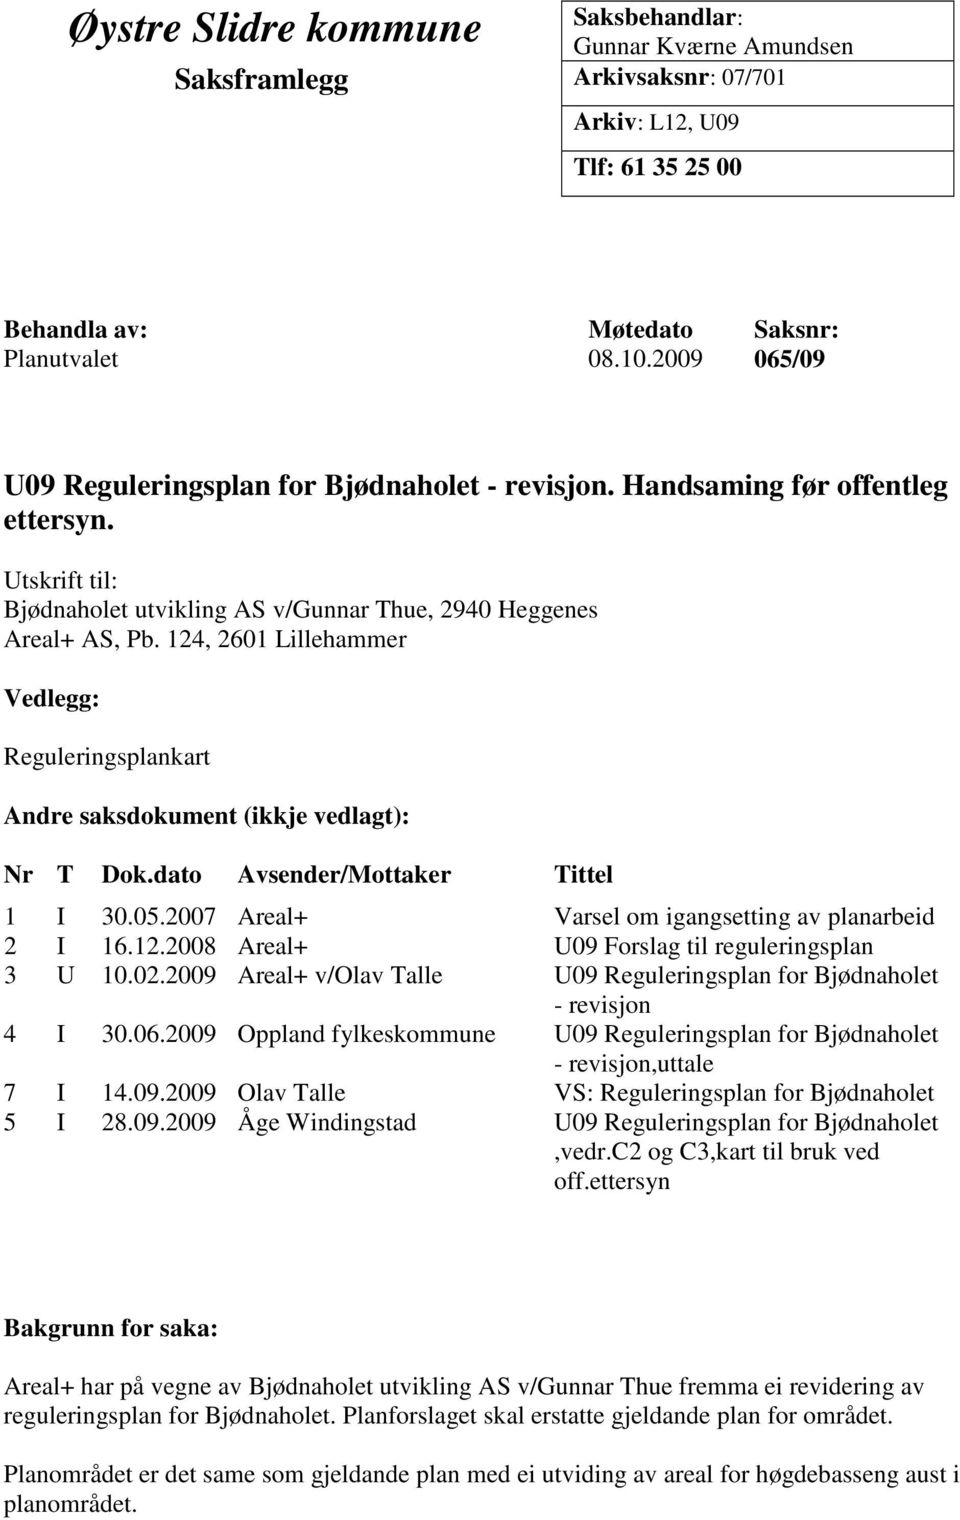 124, 2601 Lillehammer Vedlegg: Reguleringsplankart Andre saksdokument (ikkje vedlagt): Nr T Dok.dato Avsender/Mottaker Tittel 1 I 30.05.2007 Areal+ Varsel om igangsetting av planarbeid 2 I 16.12.2008 Areal+ U09 Forslag til reguleringsplan 3 U 10.